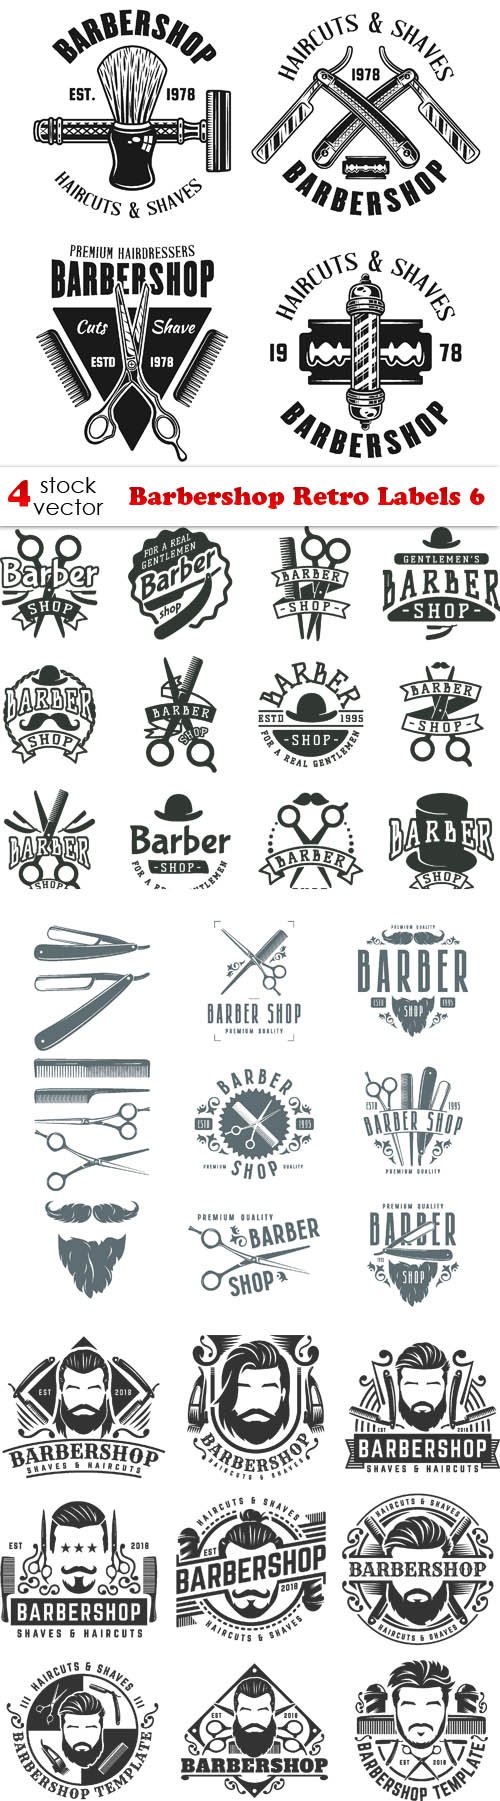 Vectors - Barbershop Retro Labels 6